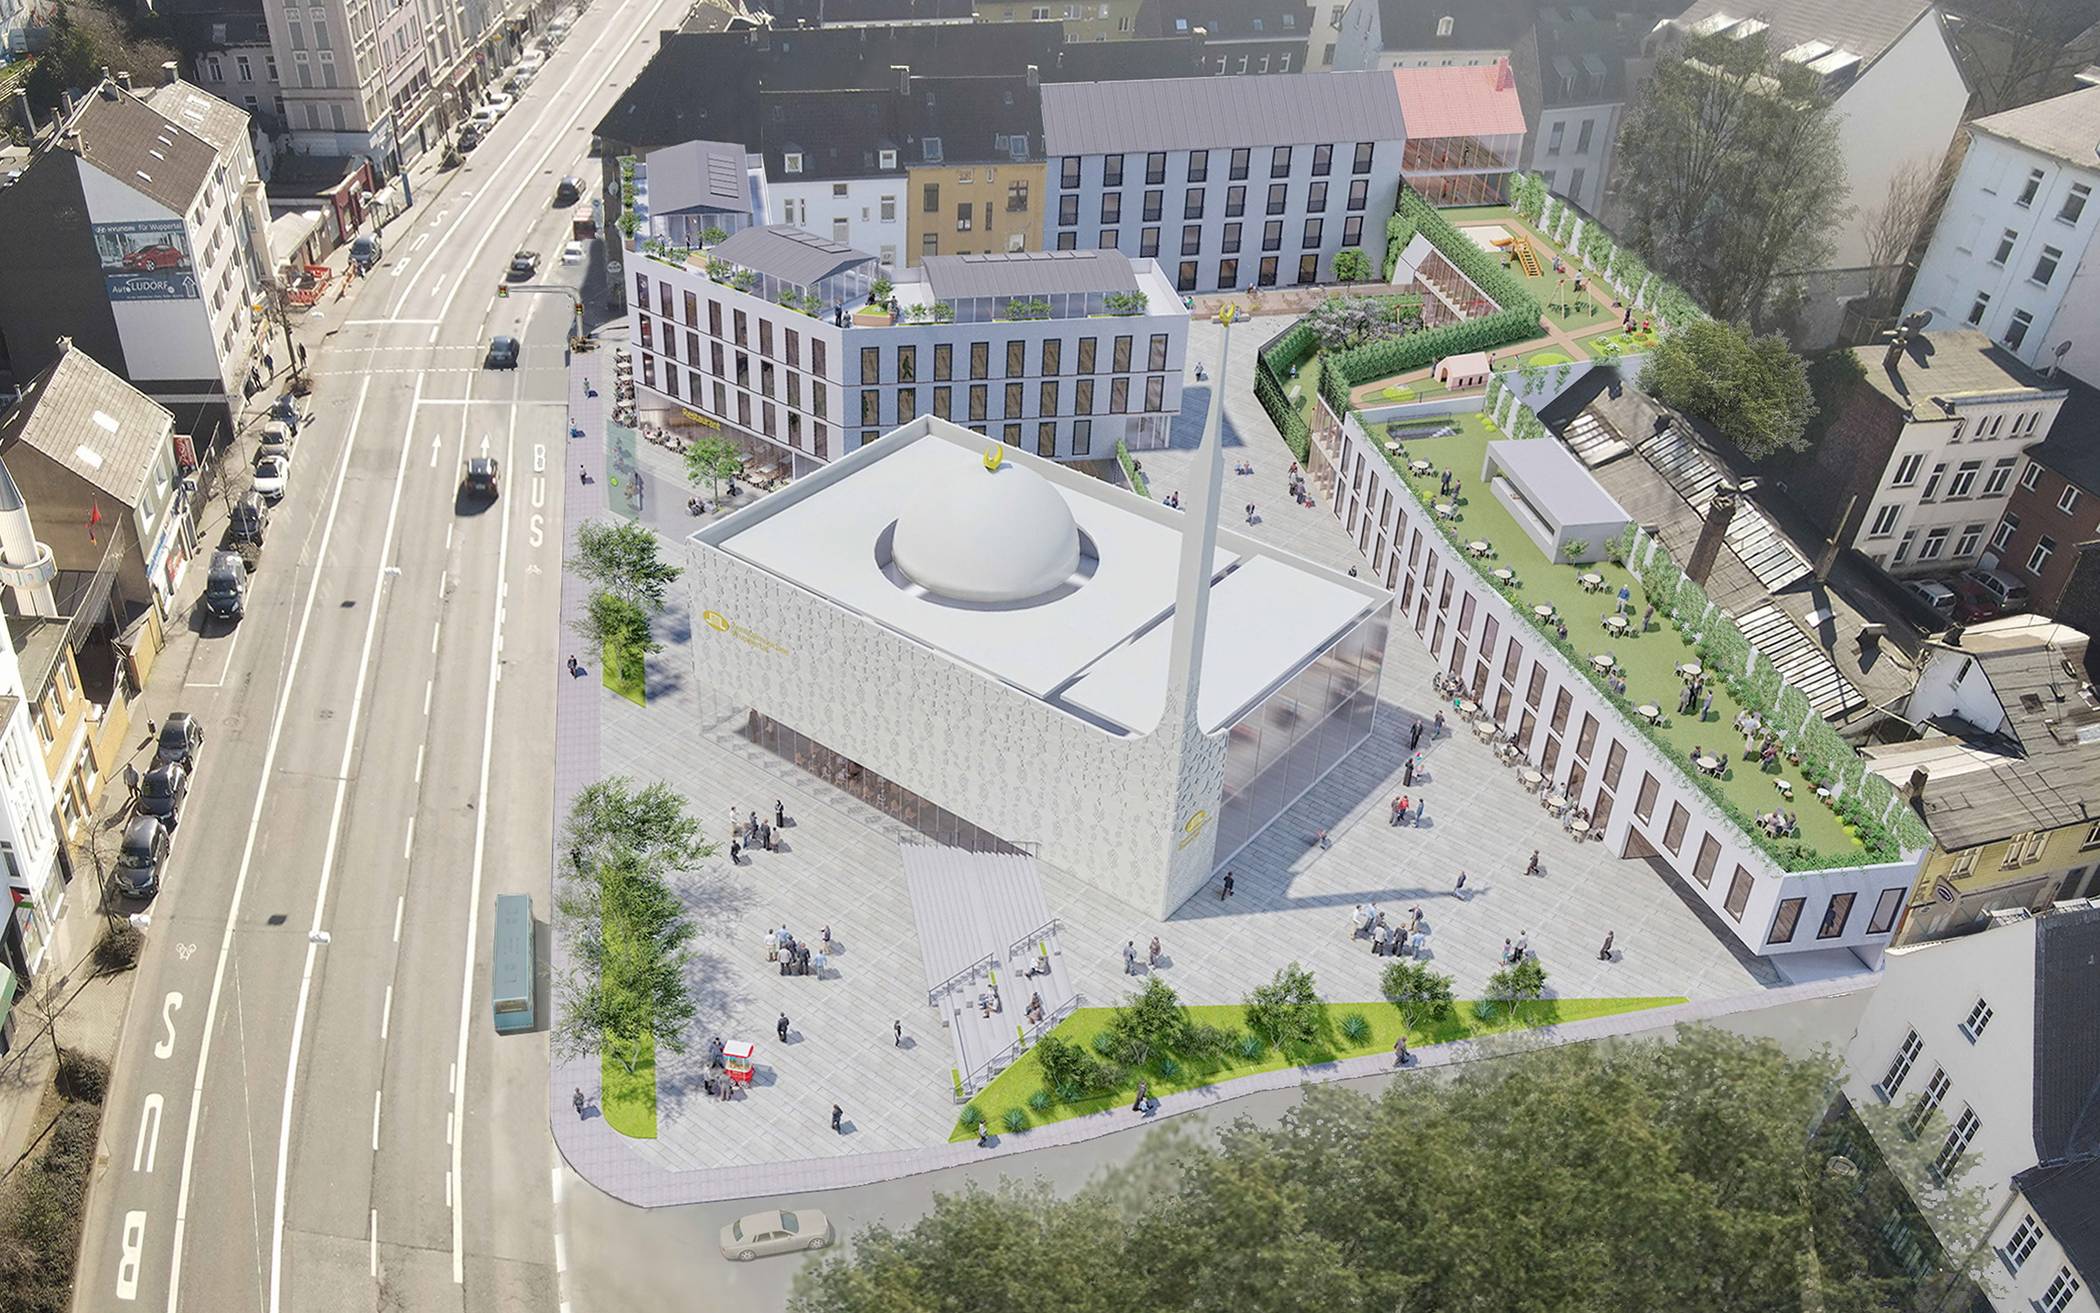 Offenbar Bürgerbegehren gegen Moschee-Bau​ in Wuppertal